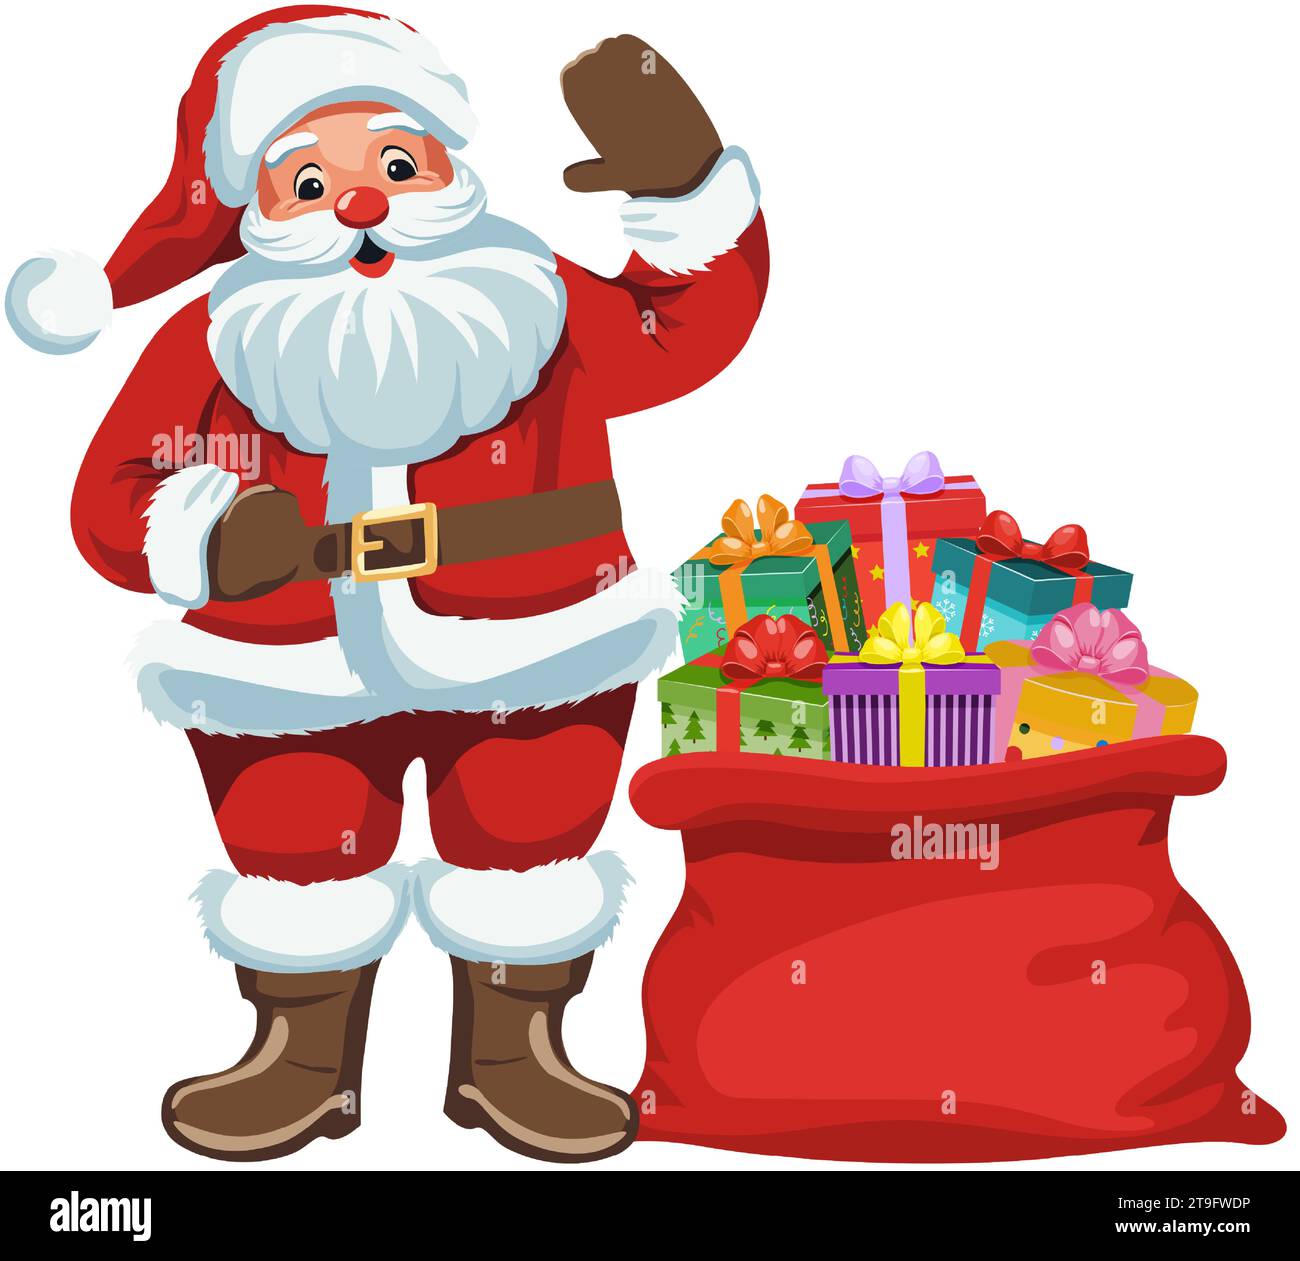 weihnachtsmann mit Geschenken. Der fröhliche Weihnachtsmann steht und winkt seine Hand neben einem Sack voller Geschenke. Traditioneller Weihnachts- und Neujahrscharakter. Stock Vektor